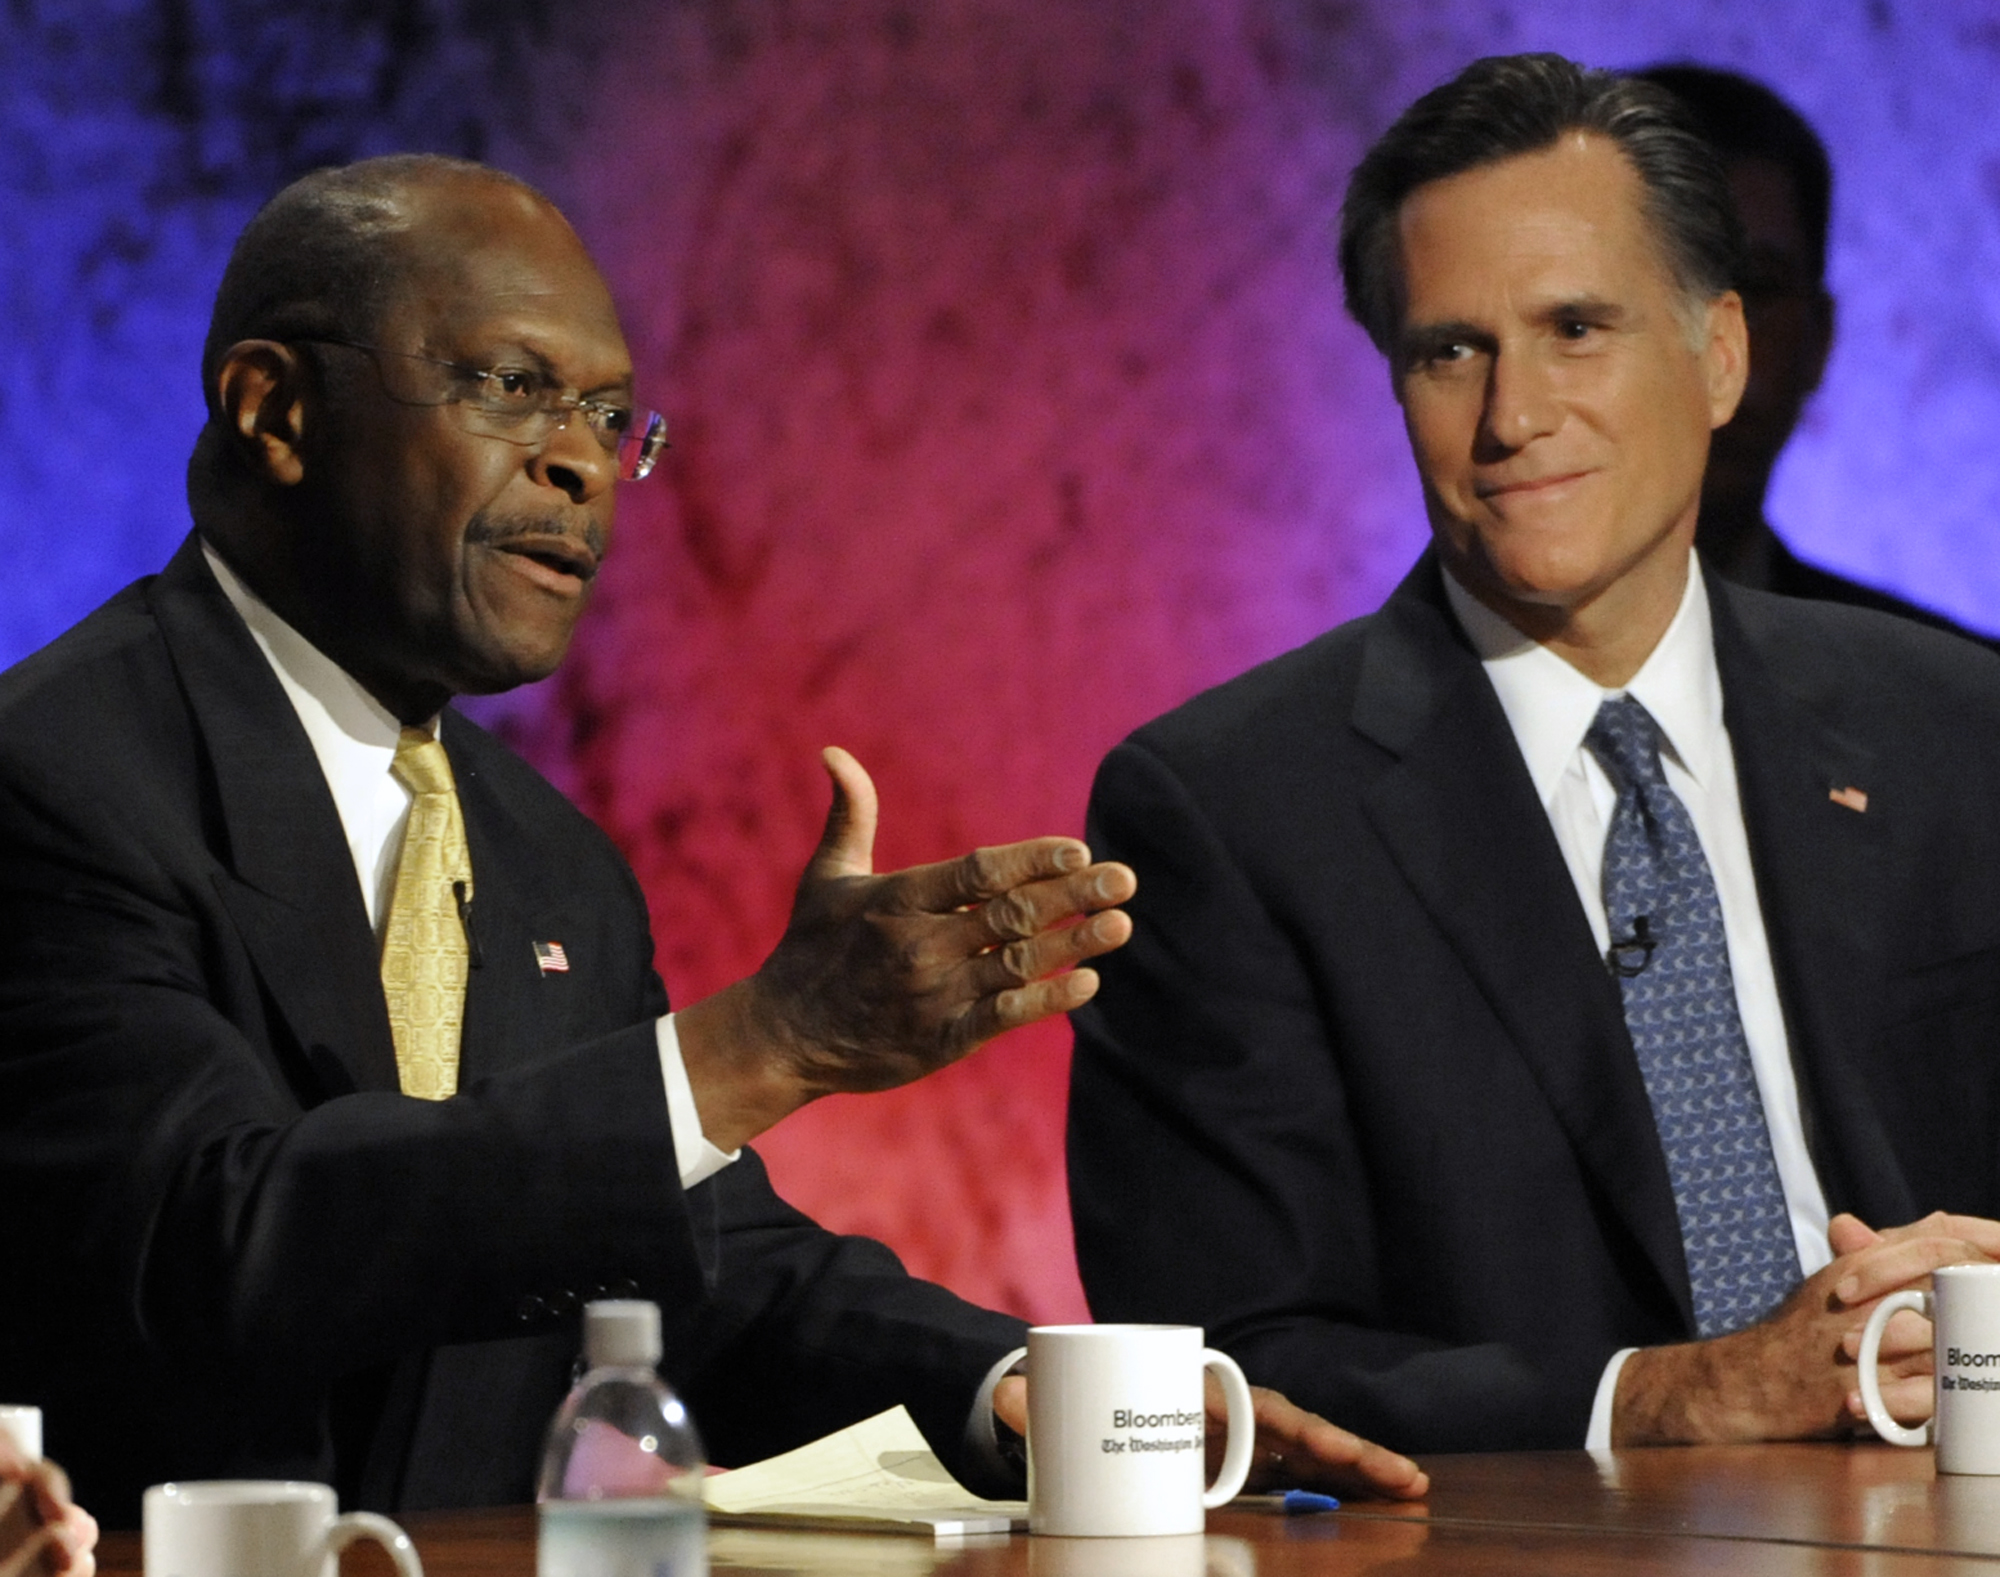 Cain i debatt med sin främste motståndare, Mitt Romney. Cain är mest populär bland republikanerna, men Romney ses som bäste kandidat för att kunna utmana president Obama.